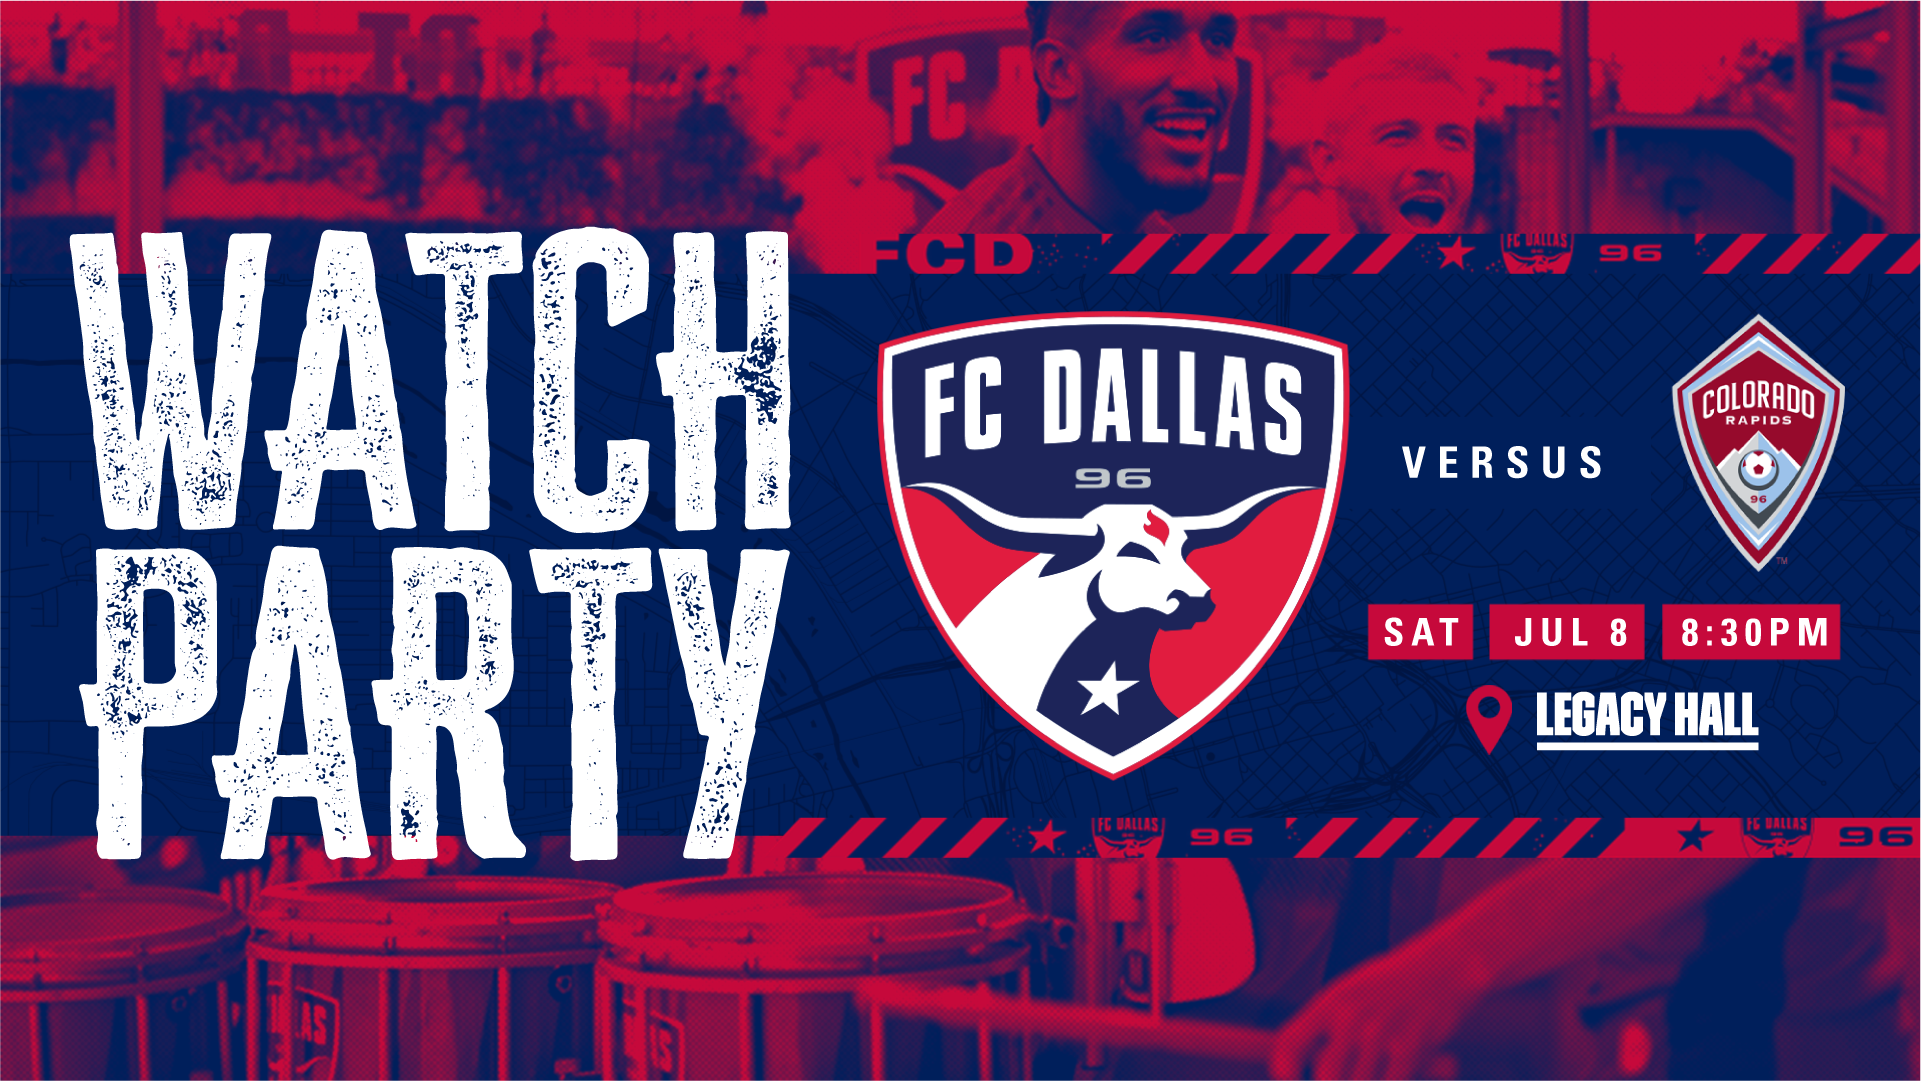 FC Dallas VS Colorado Watch Party - hero